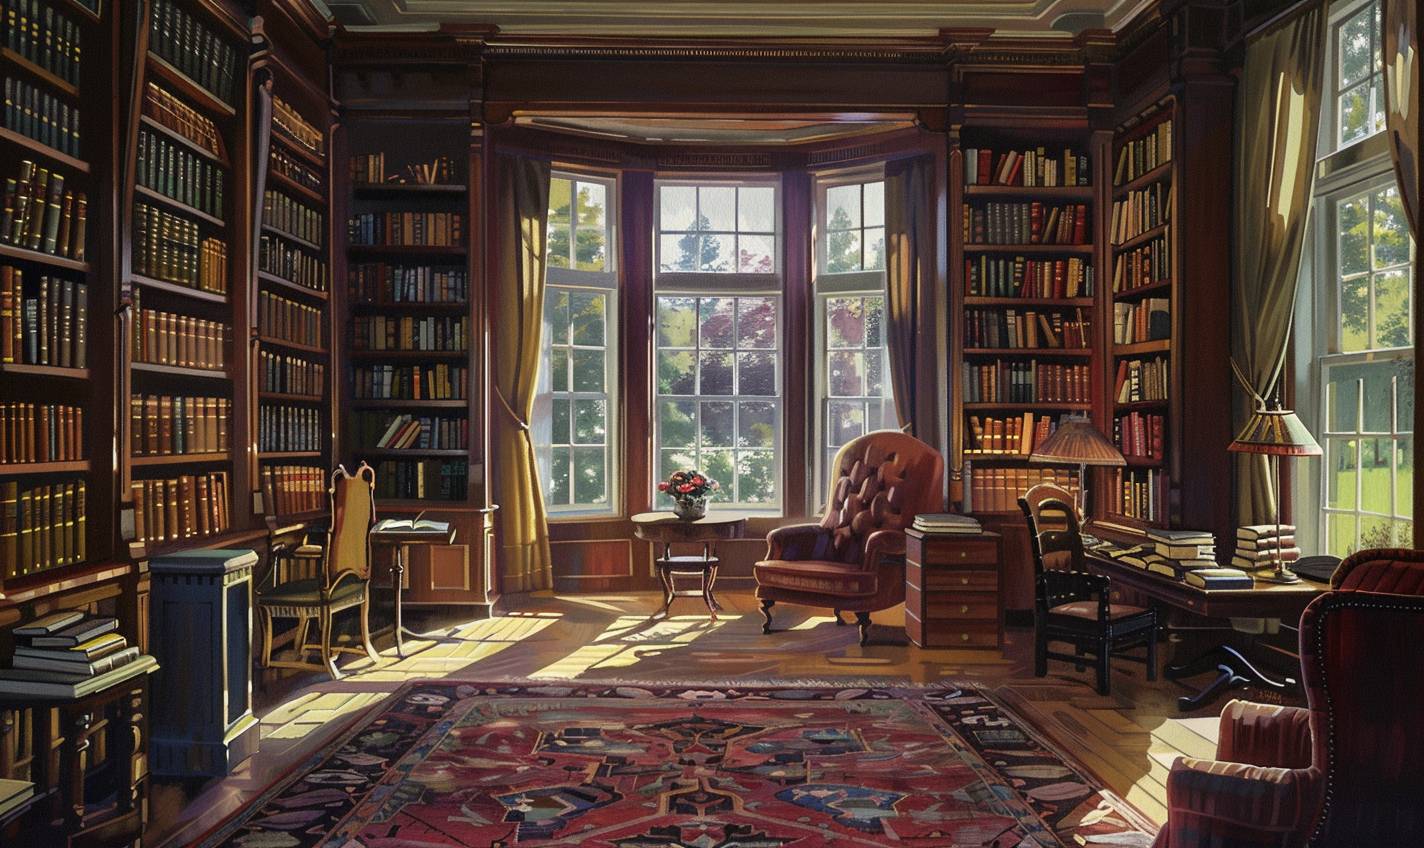 クラレンス・ガニョンのスタイルで、終わりのない本棚のある永遠の図書館 --ar 5:3  --v 6.0